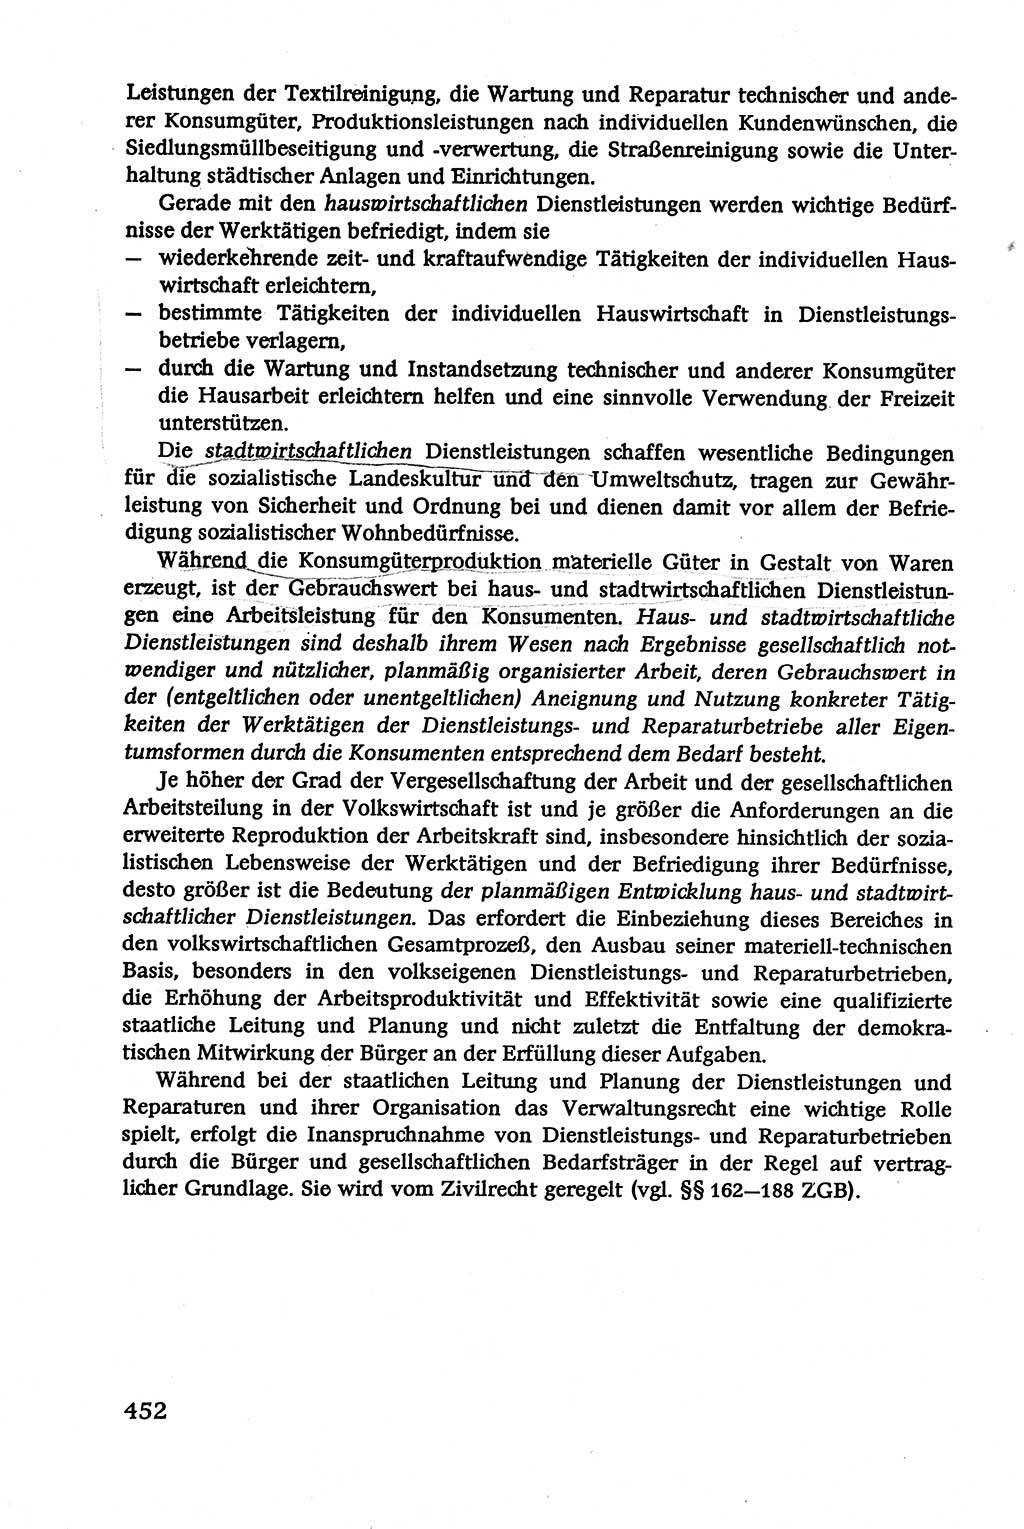 Verwaltungsrecht [Deutsche Demokratische Republik (DDR)], Lehrbuch 1979, Seite 452 (Verw.-R. DDR Lb. 1979, S. 452)